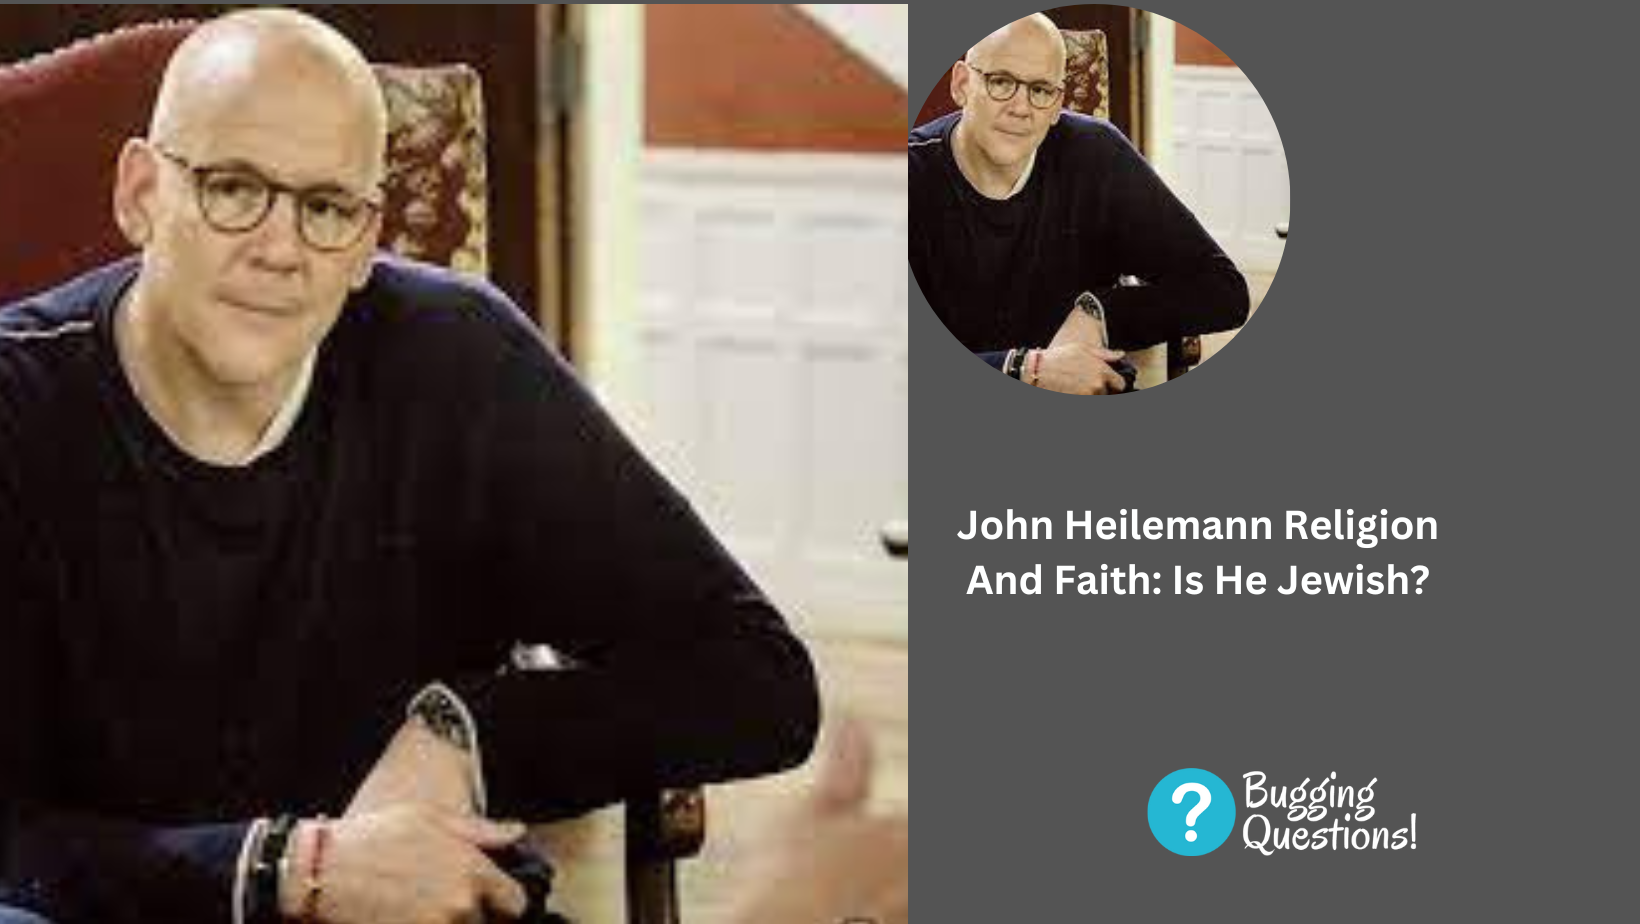 John Heilemann Religion And Faith: Is He Jewish?